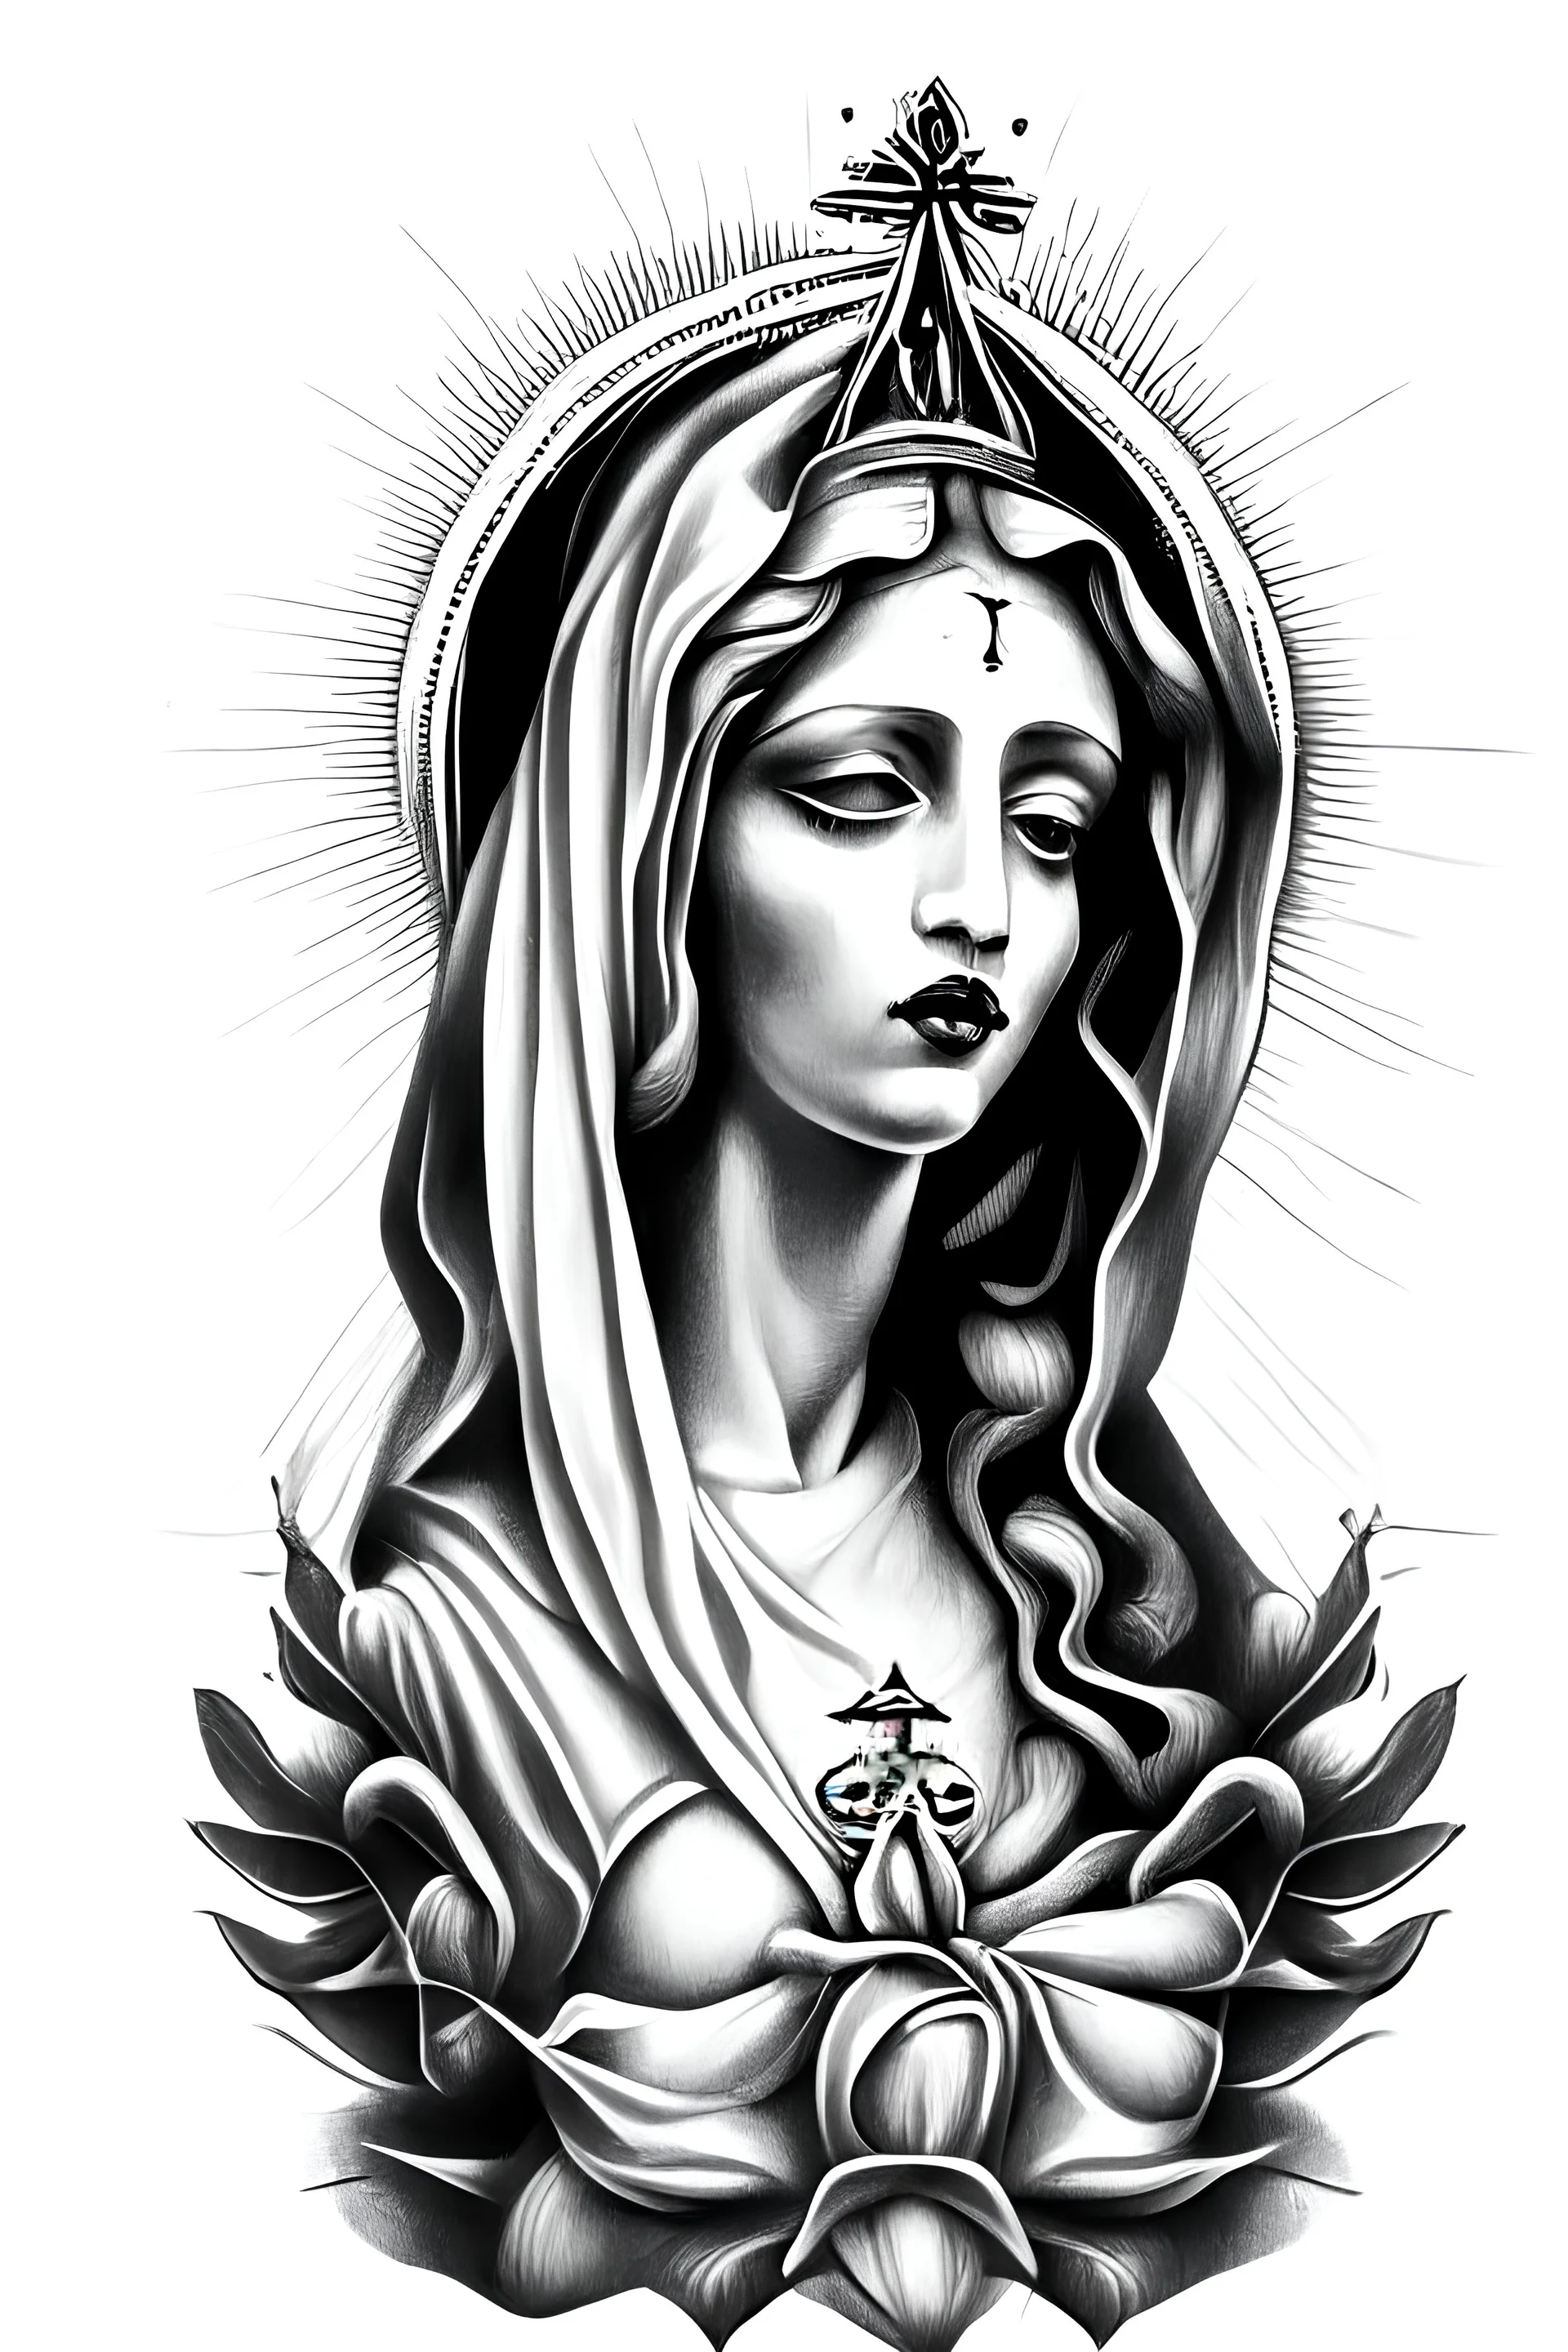 75 Inspiring Virgin Mary Tattoos Ideas & Meaning - Tattoo Me Now | Virgin mary  tattoo, Mary tattoo, Mother mary tattoos